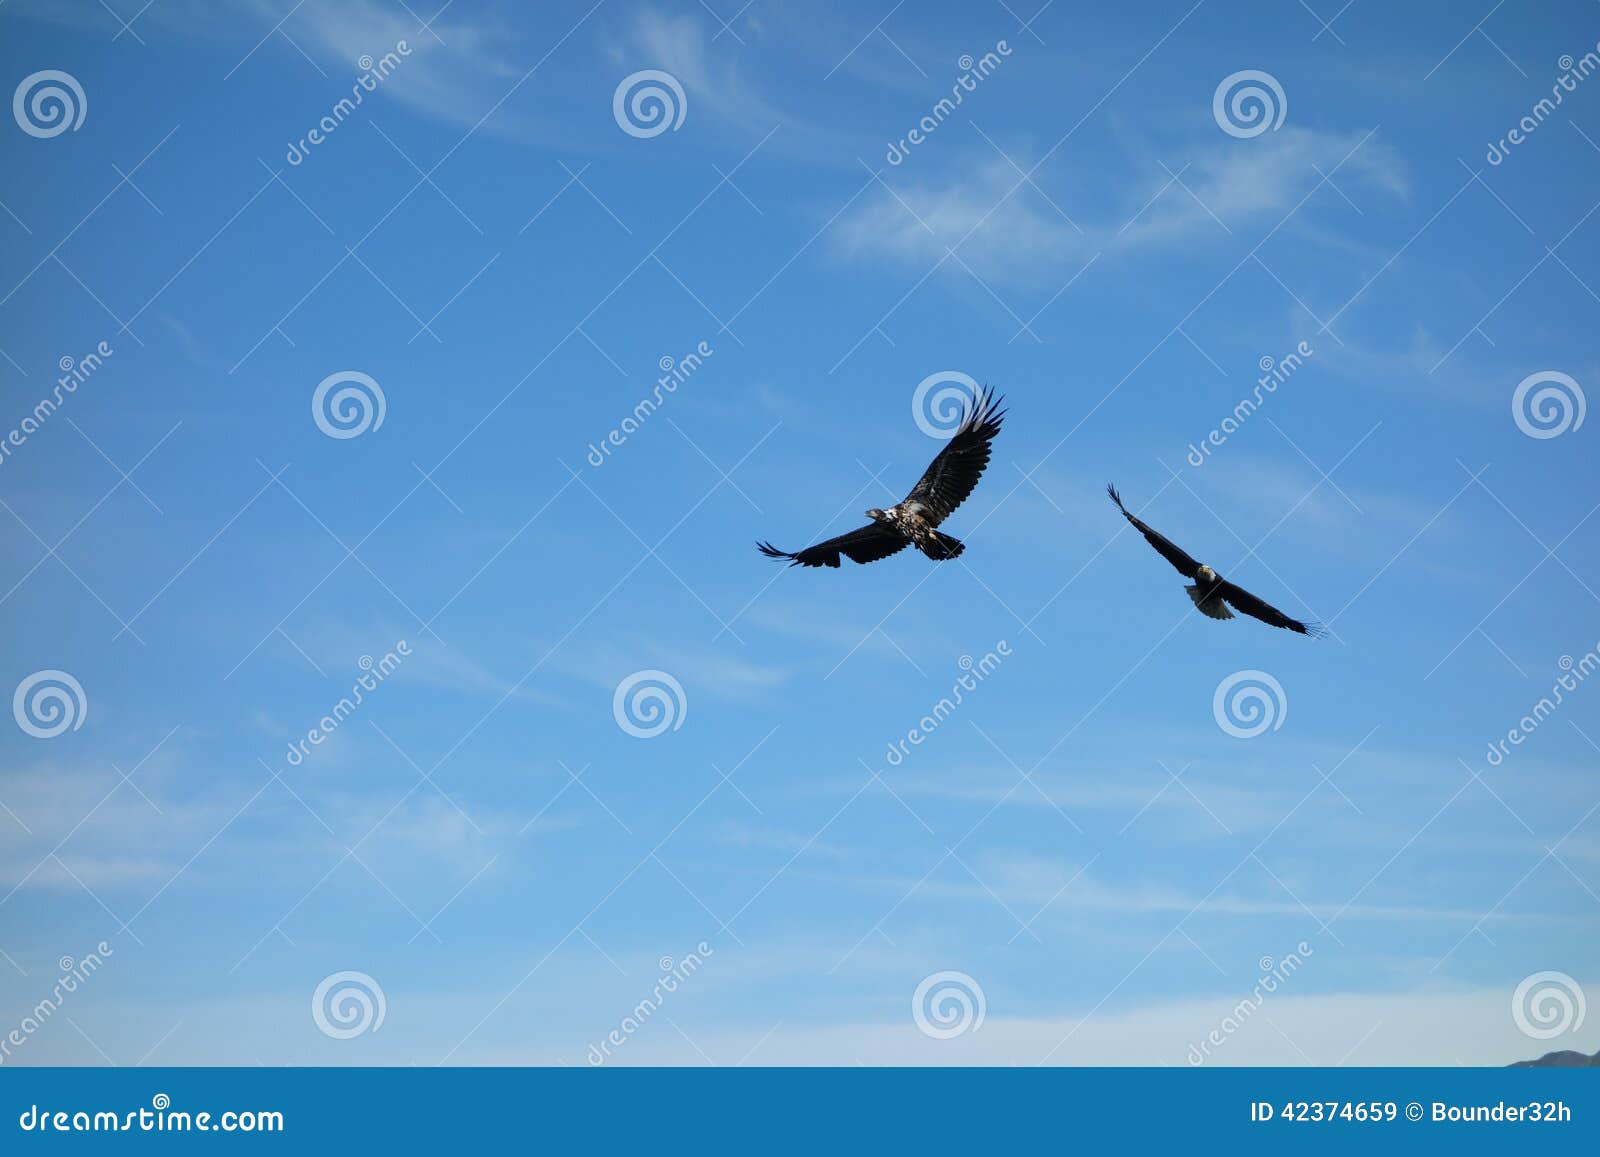 eagles taking flight at valdez, alaska.